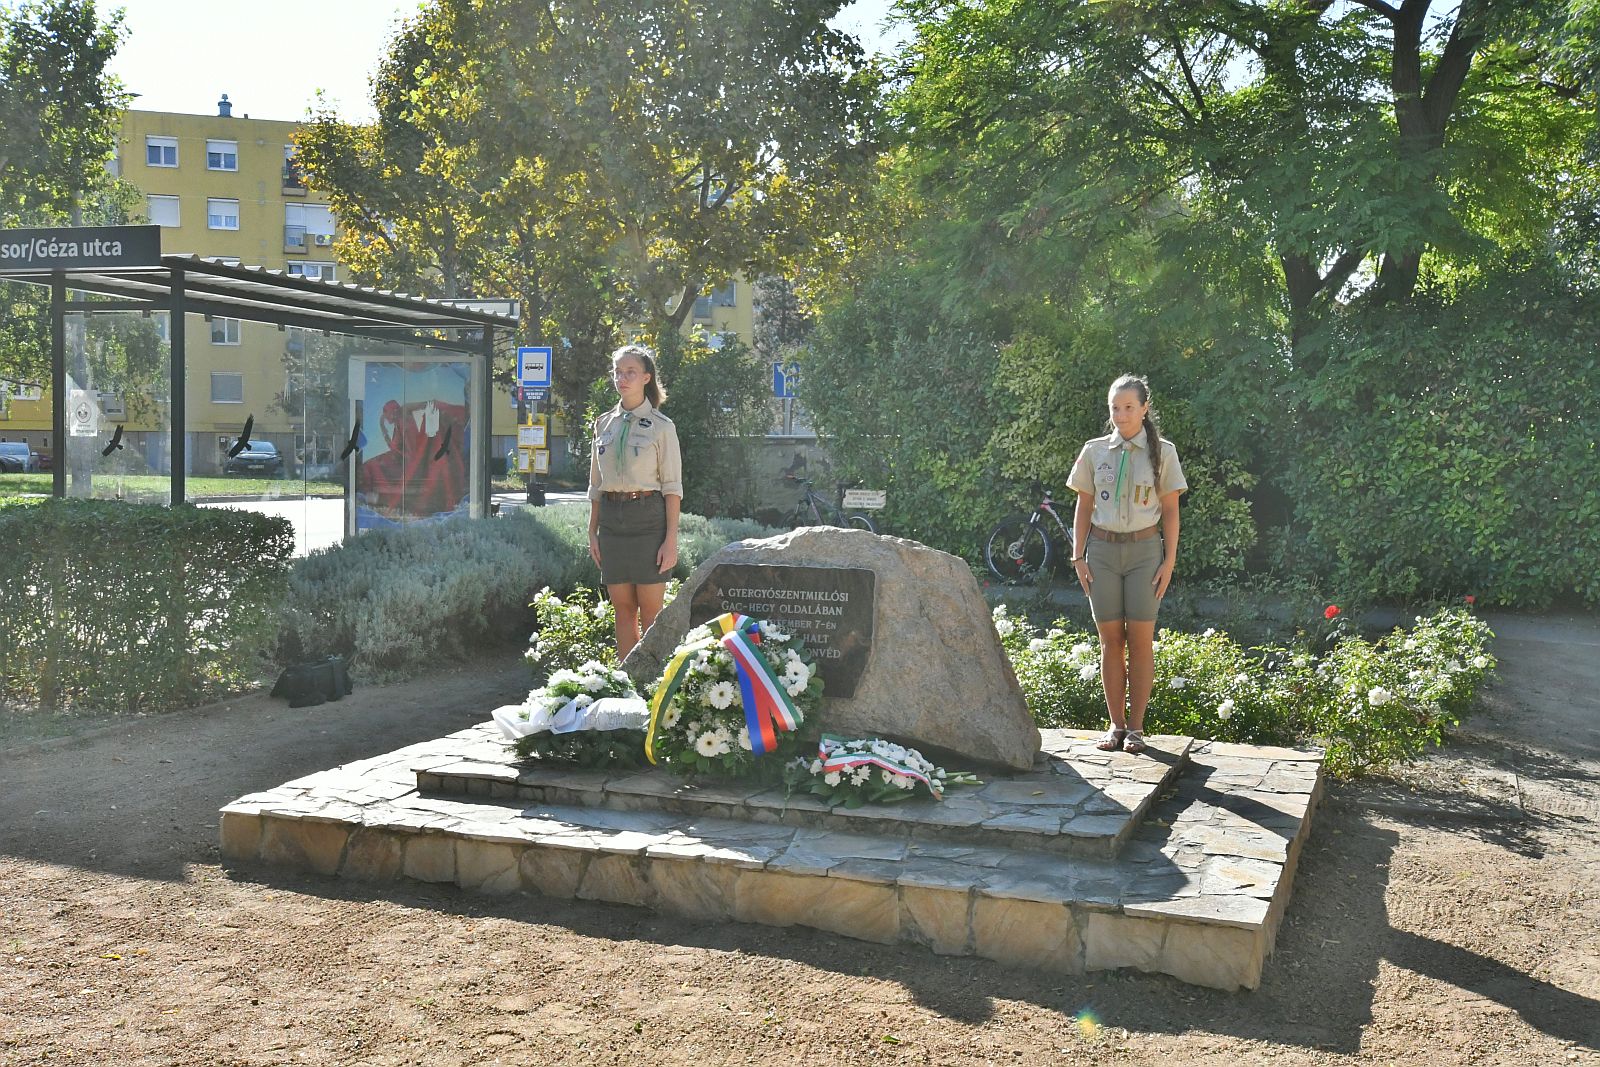 A Gac-oldalban elhunyt székesfehérvári katonákra emlékeztek a Gyergyó Emlékparkban